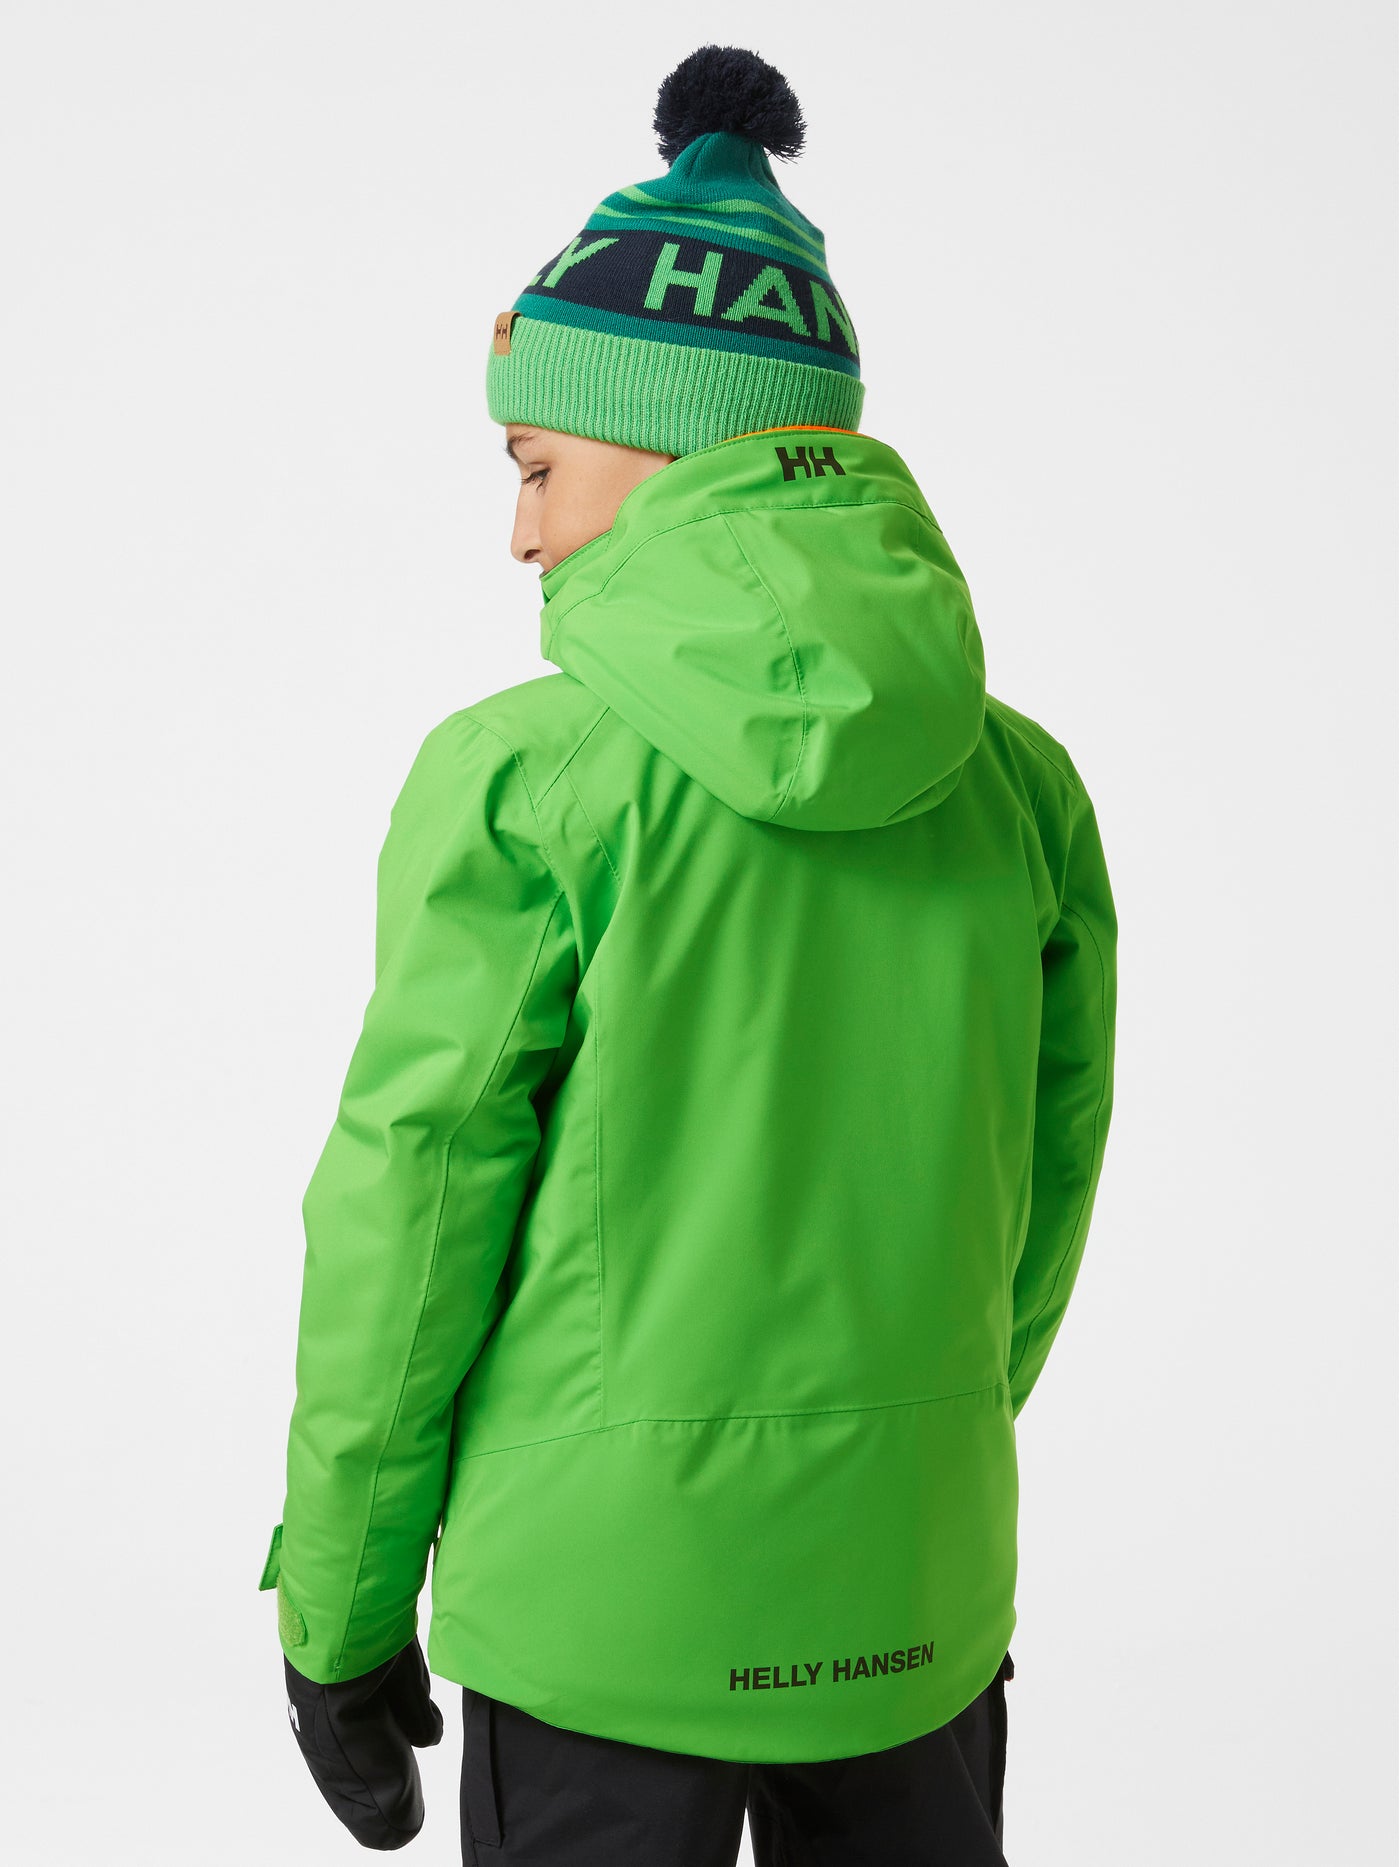 Helly Hansenin lasten ja nuorten Alpha-laskettelutakki kirkkaan vihreässä sävyssä lapsen päällä takaa kuvattuna